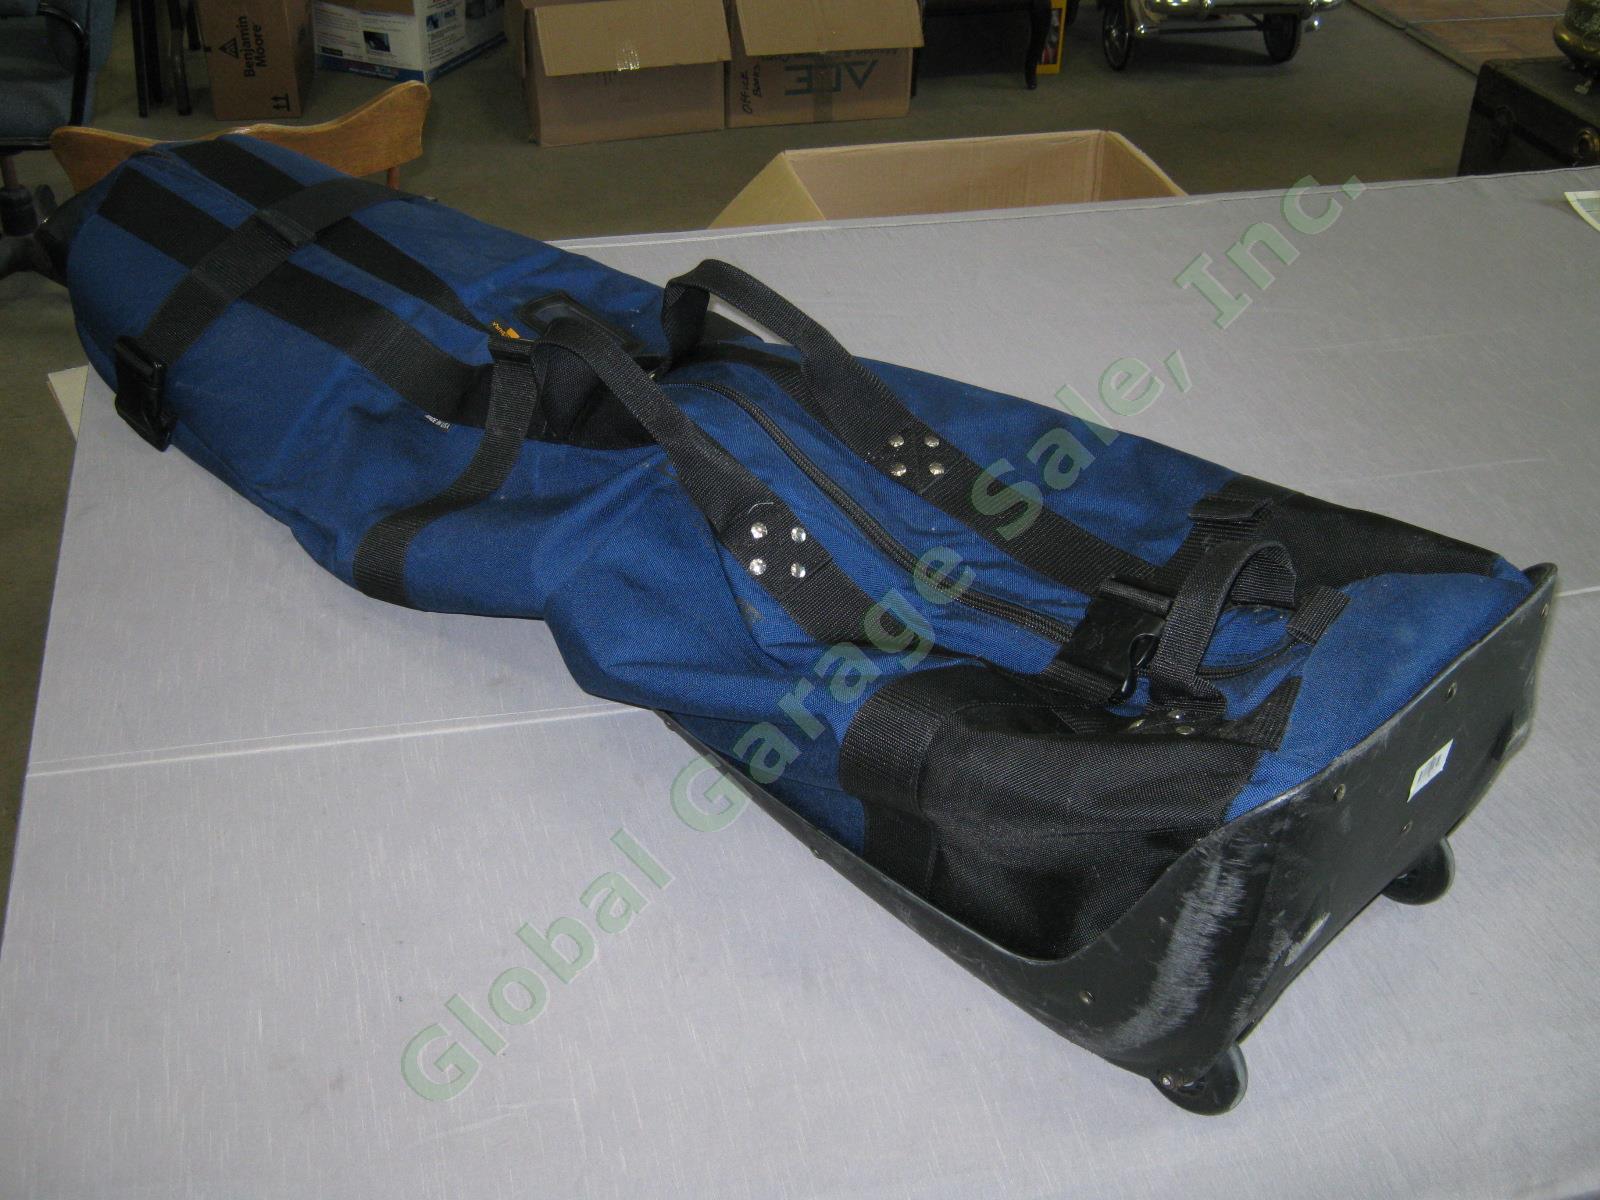 Navy Club Glove Burst Proof Travel Golf Club Bag With Wheels 2 II Free Stiff Arm